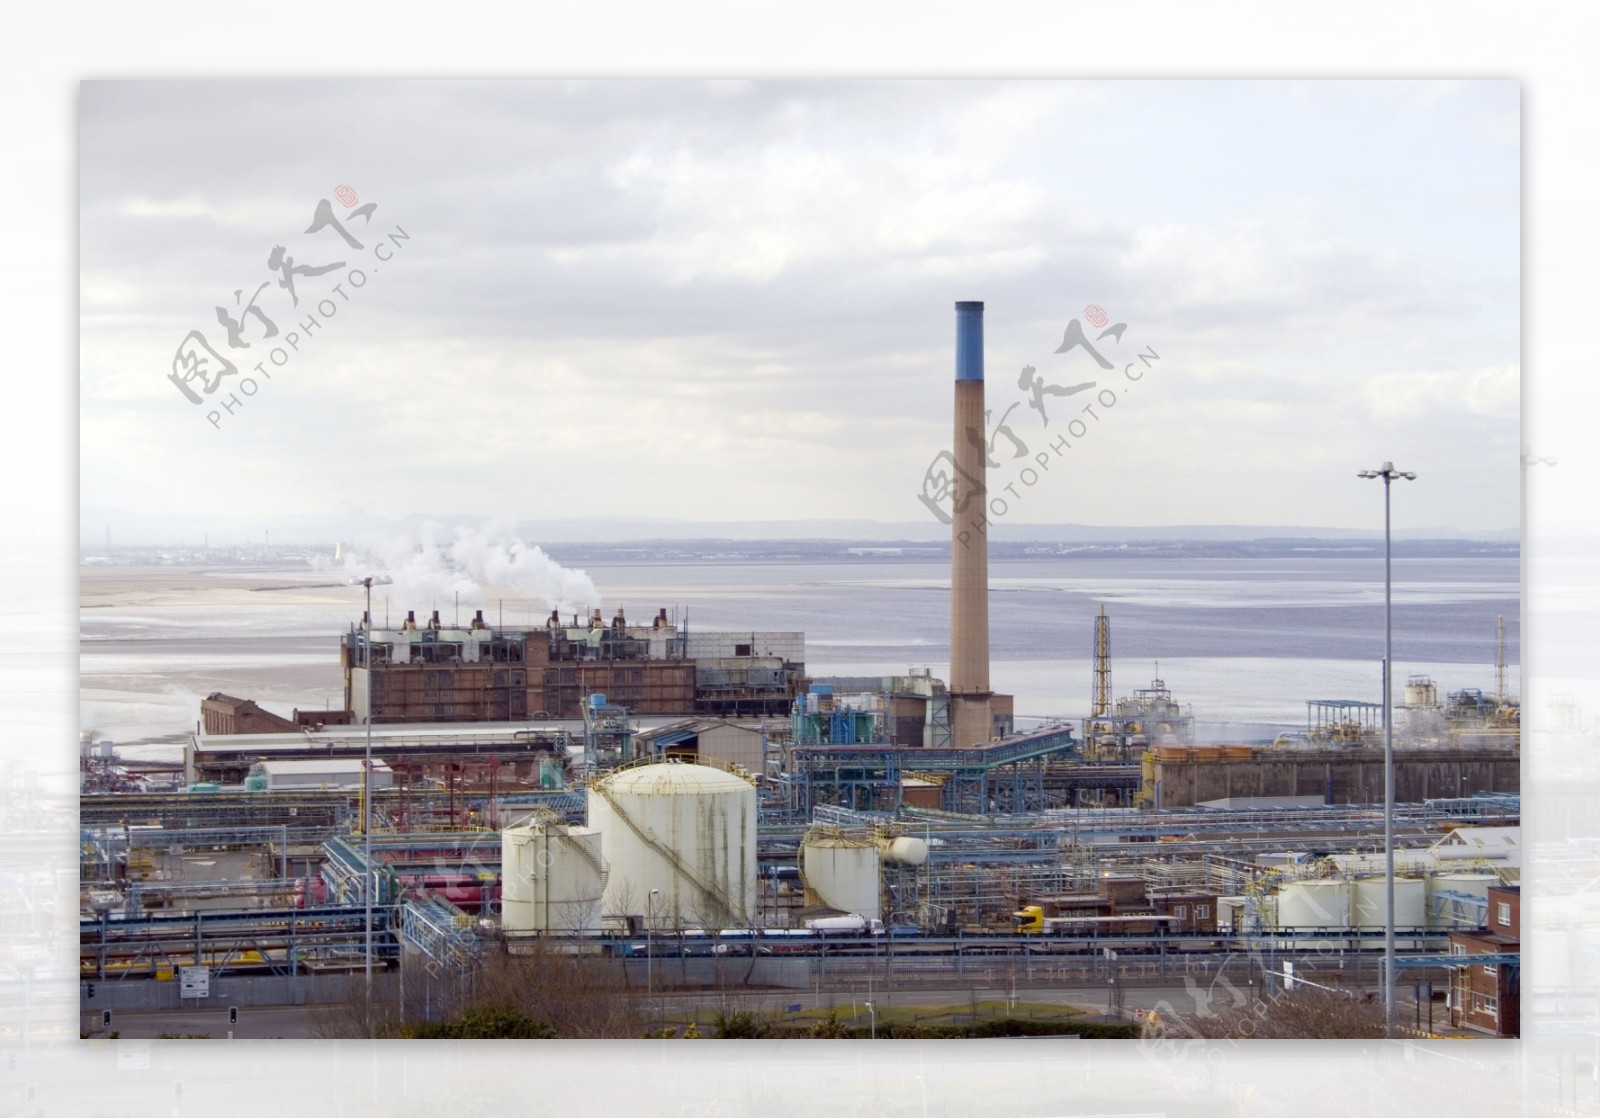 炼油炼油工厂摄影图片